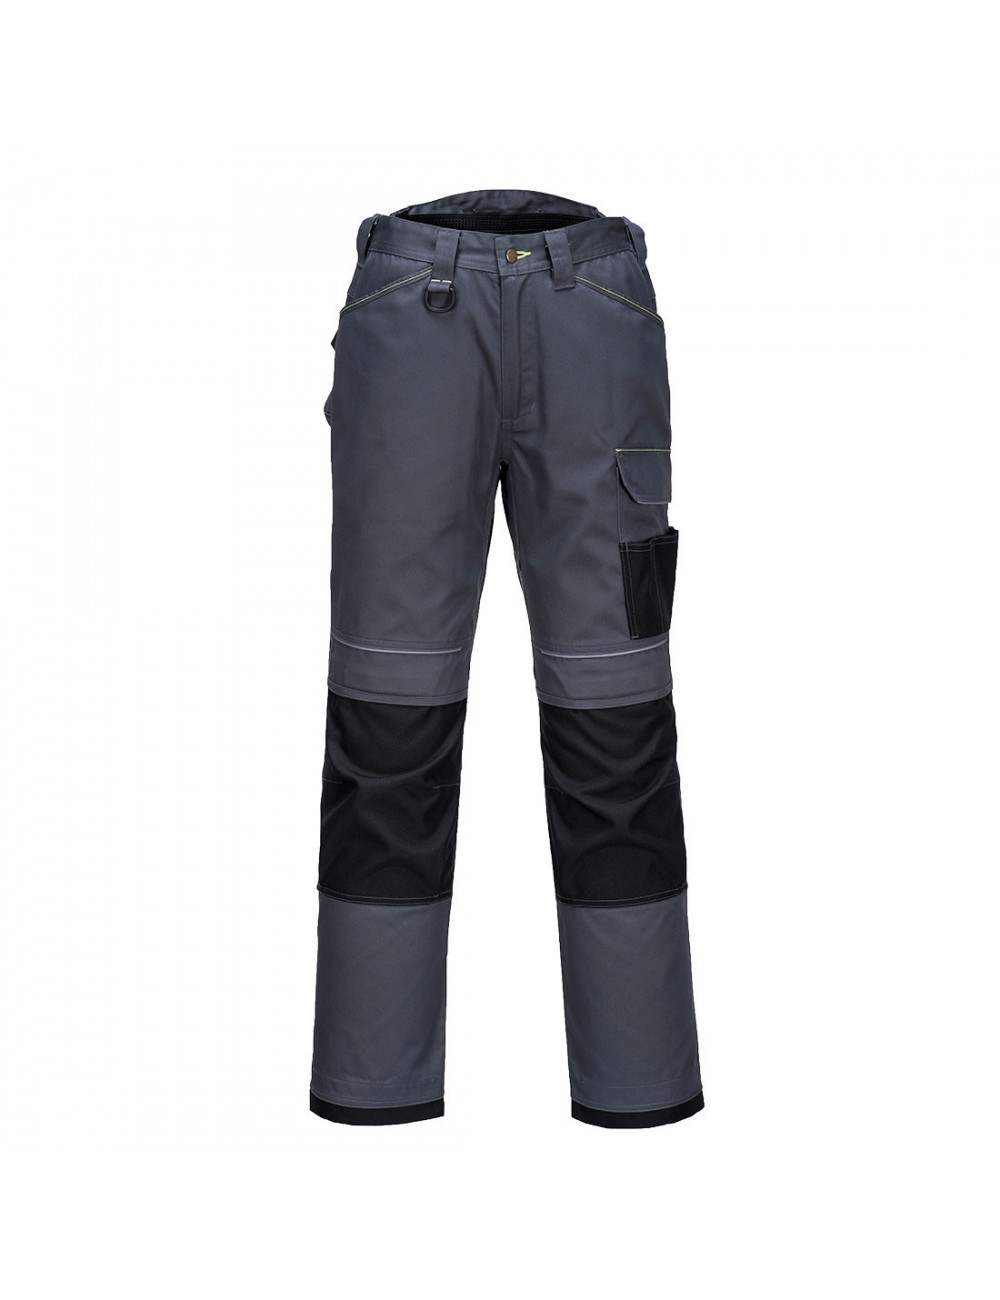 Spodnie robocze pw3 szaro/czarny Portwest